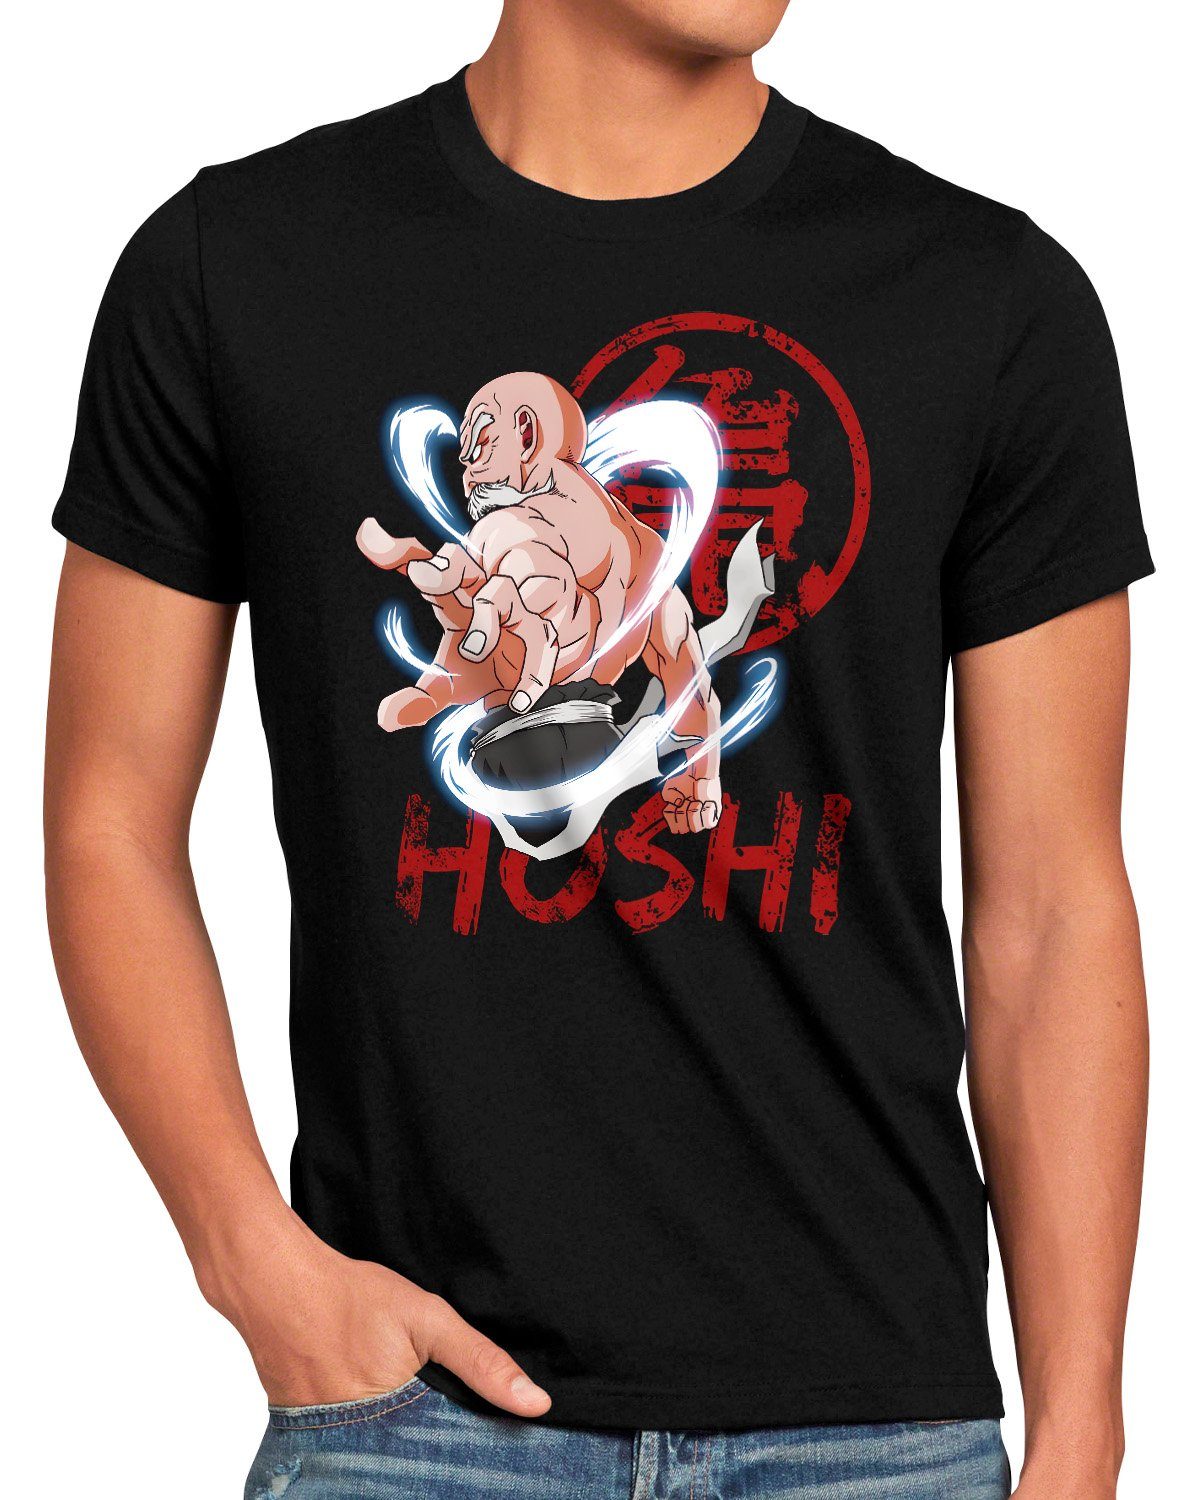 style3 the Roshi breakers Herren dragonball z gt T-Shirt songoku Master Print-Shirt kakarot super